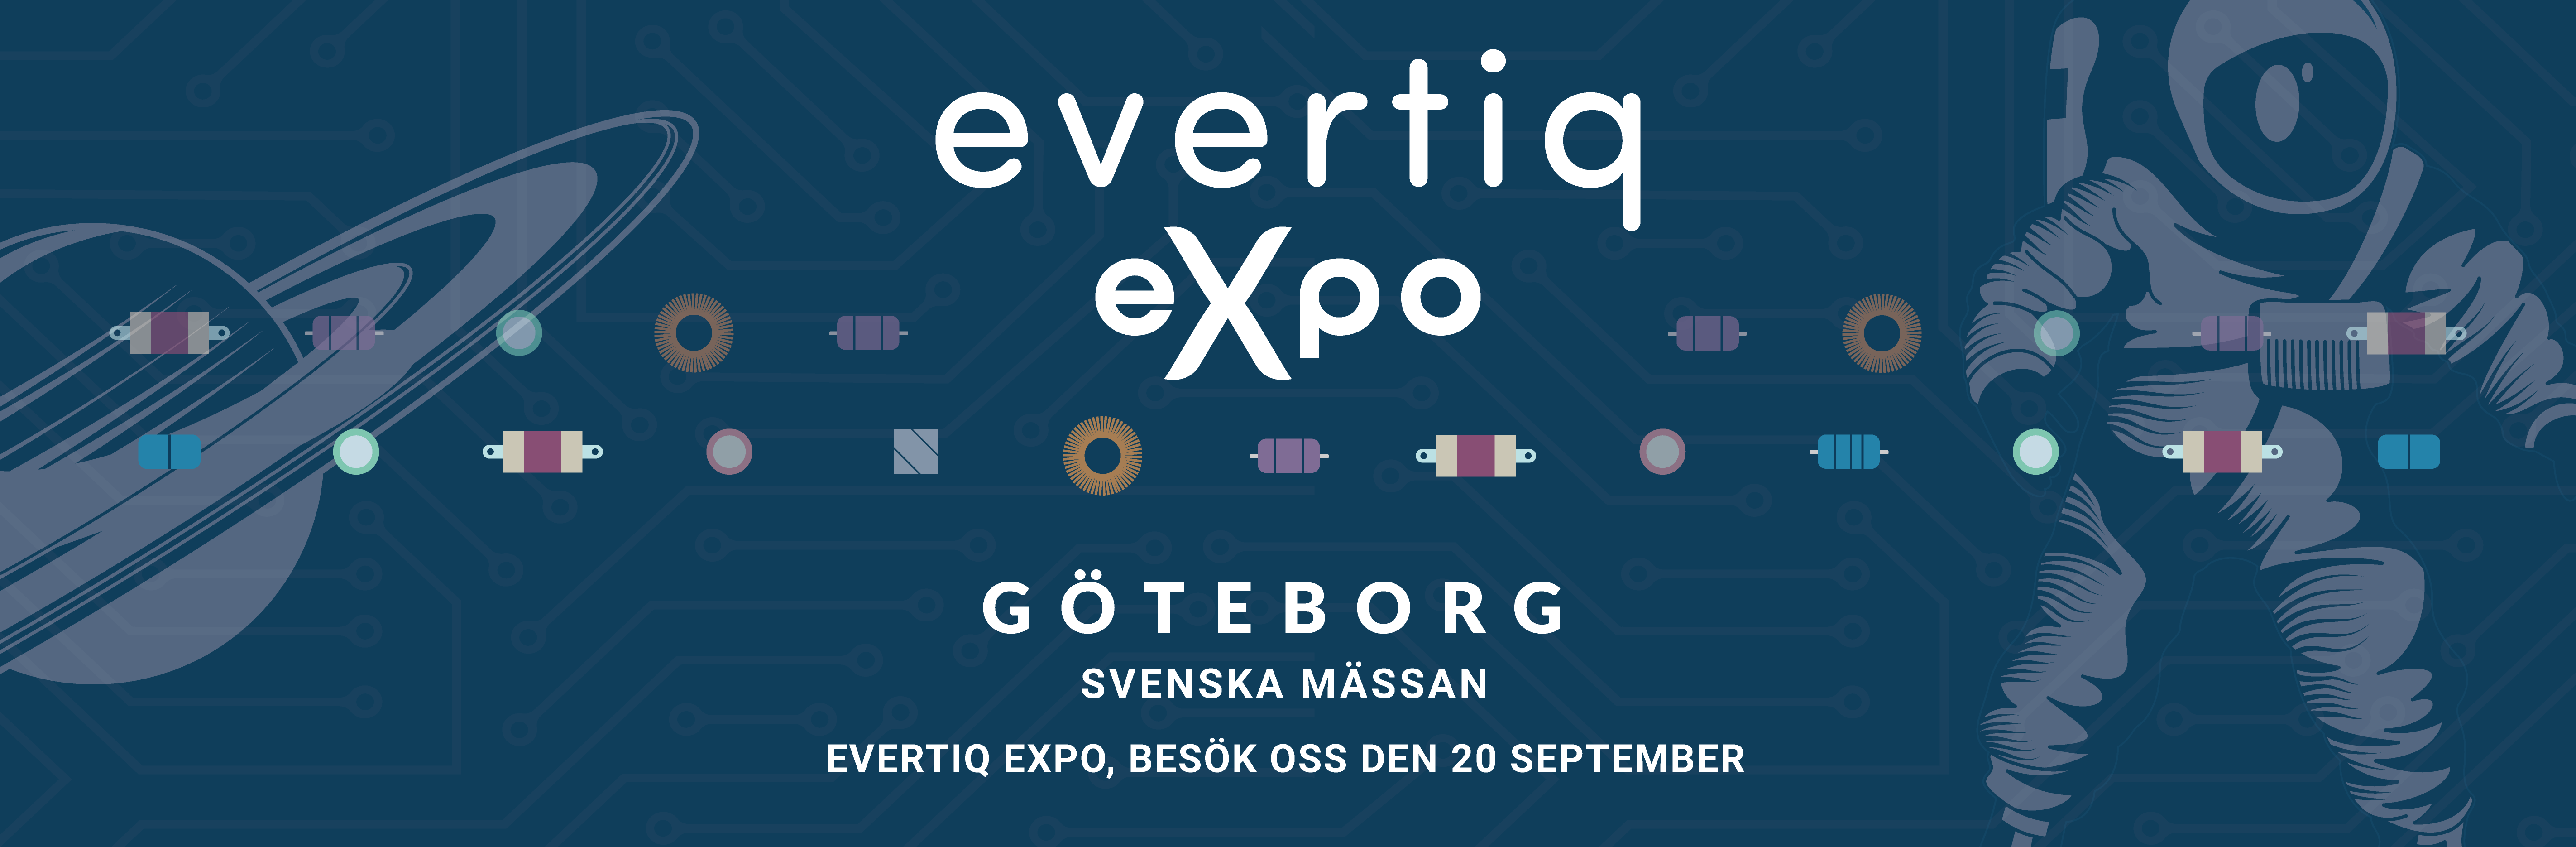 Exhibition Svenska Mässan Göteborg